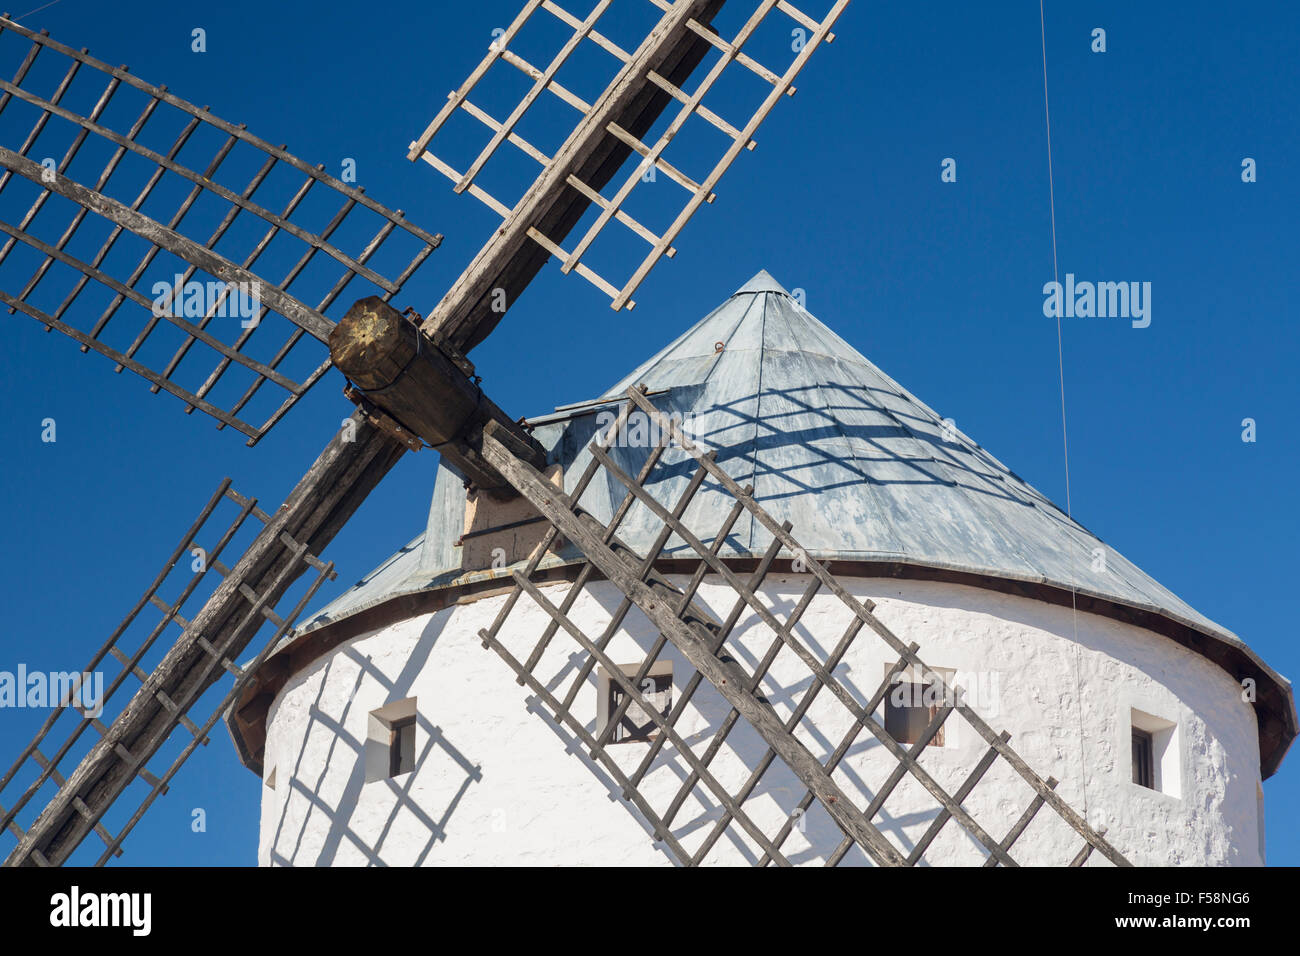 Detalle del molino de viento históricos preservados en la llanura por encima del Campo de Criptana en Castilla-La Mancha, España Foto de stock